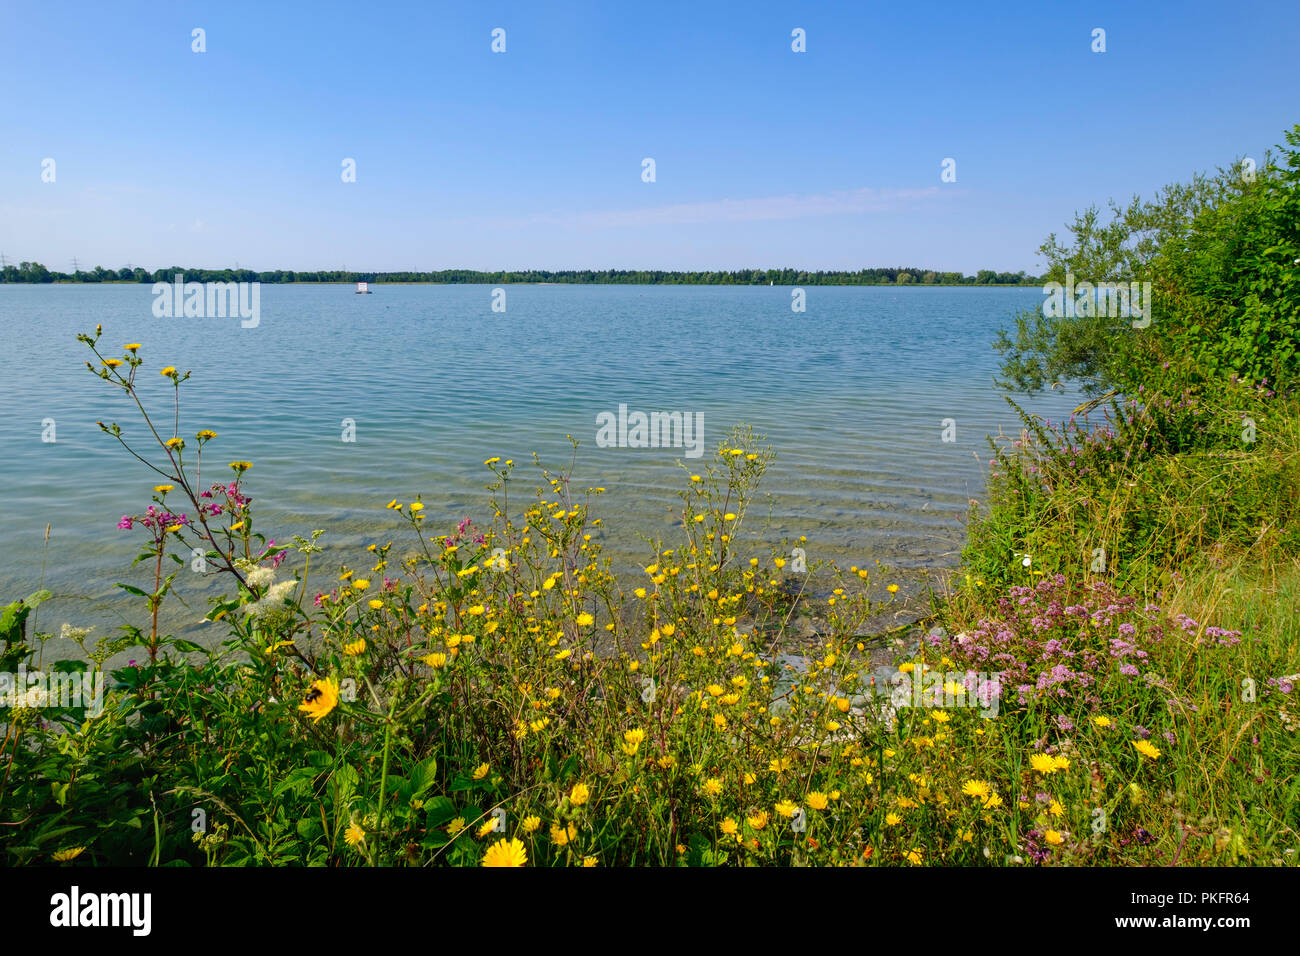 Mandicho See, Lech Reservoir, Merching bei Augsburg, Schwaben, Bayern, Deutschland Stockfoto